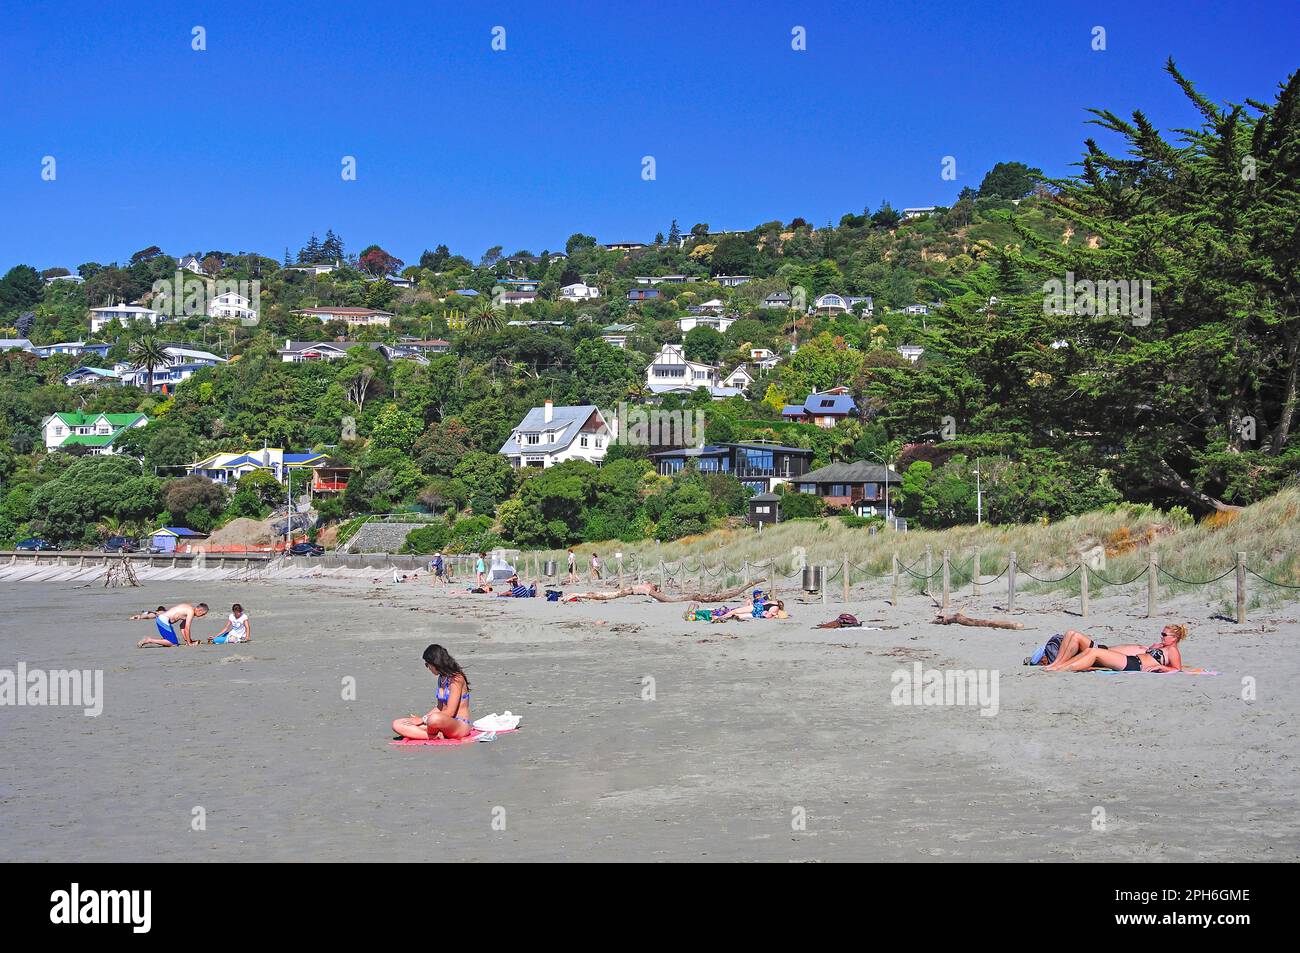 La plage de Tahunanui, Nelson, Nelson, île du Sud, Nouvelle-Zélande Banque D'Images